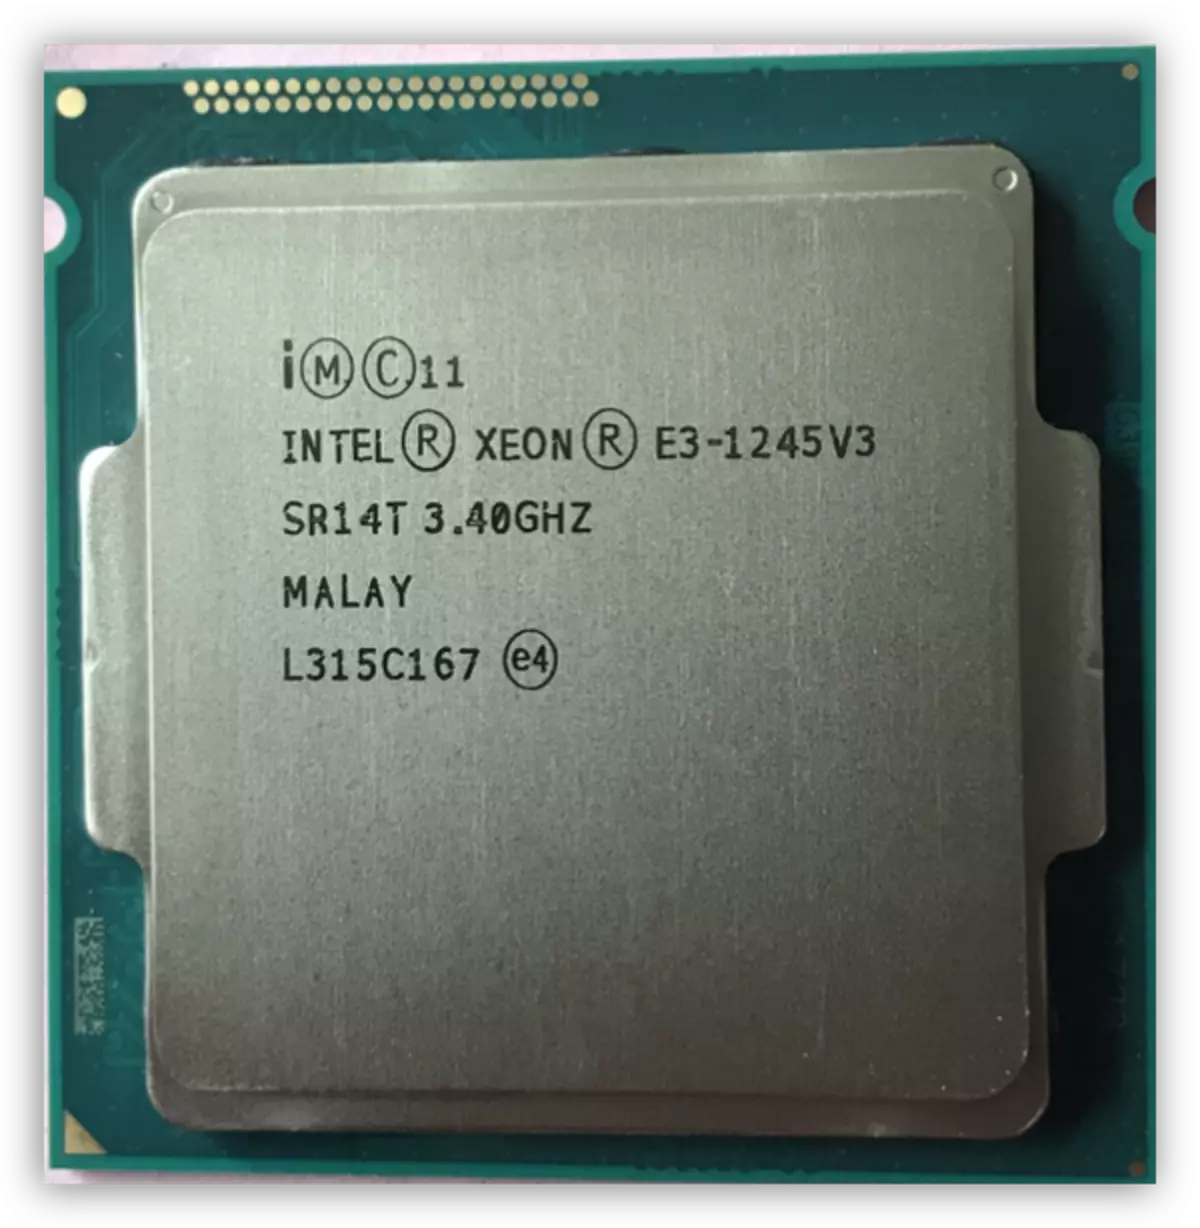 Xeon E3-1245 V3 processor juu ya haswell aryhitecture.